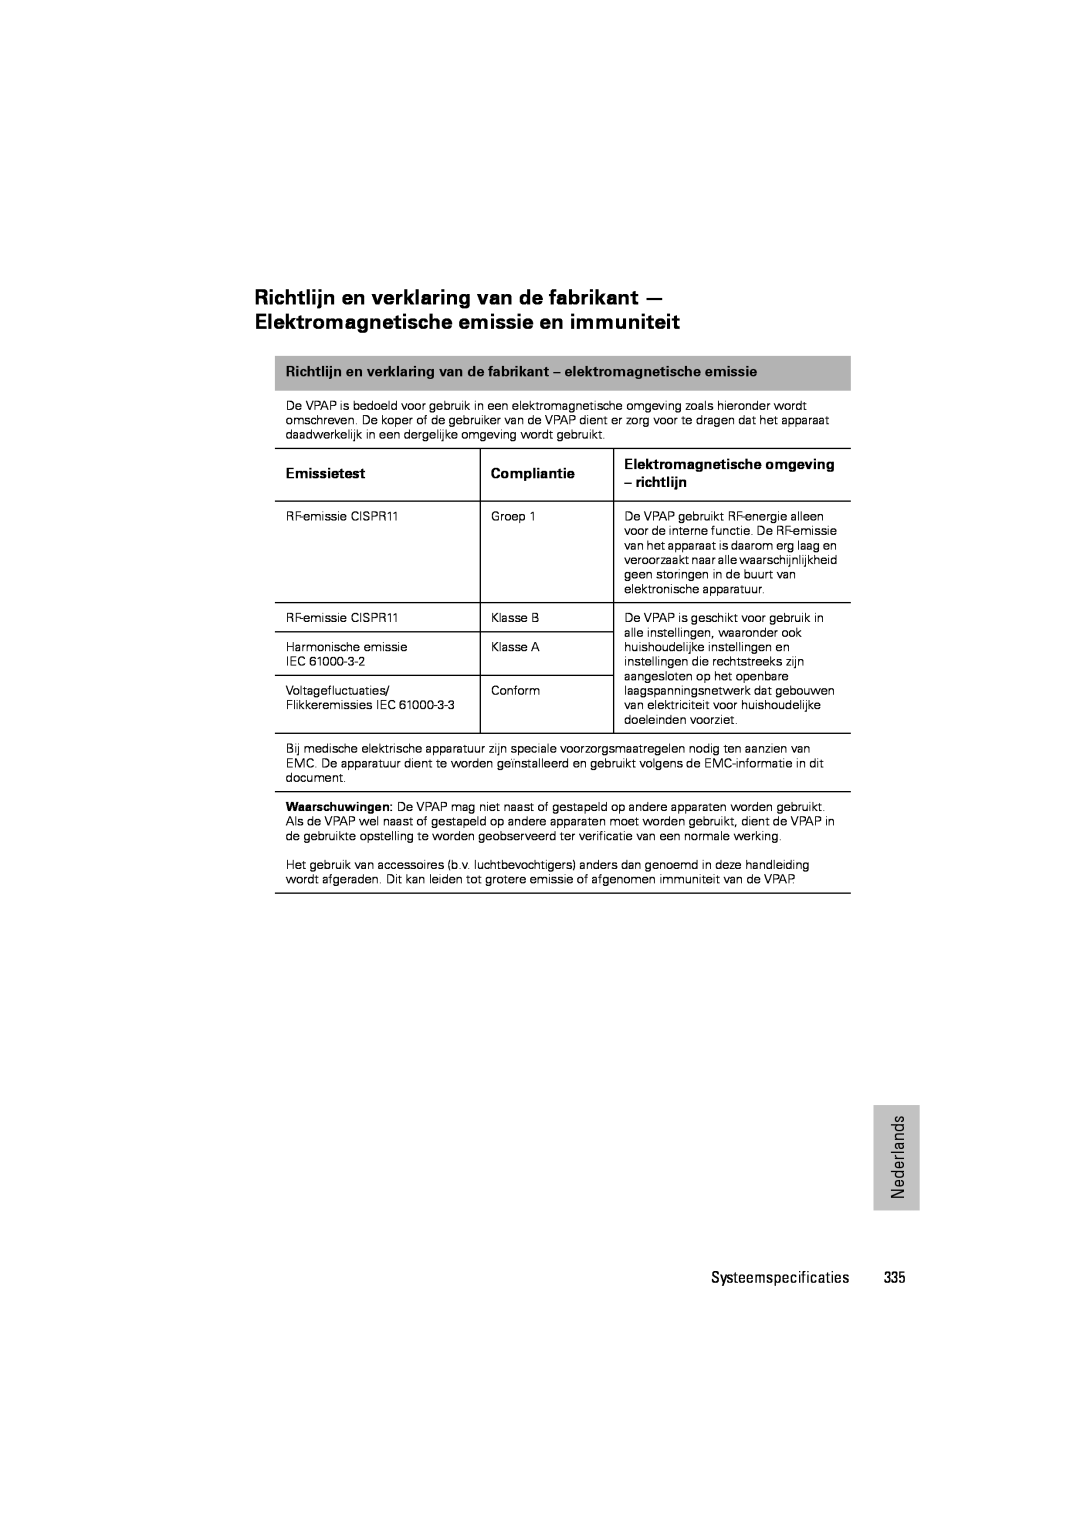 ResMed III & III ST Richtlijn en verklaring van de fabrikant, Elektromagnetische emissie en immuniteit, Emissietest 